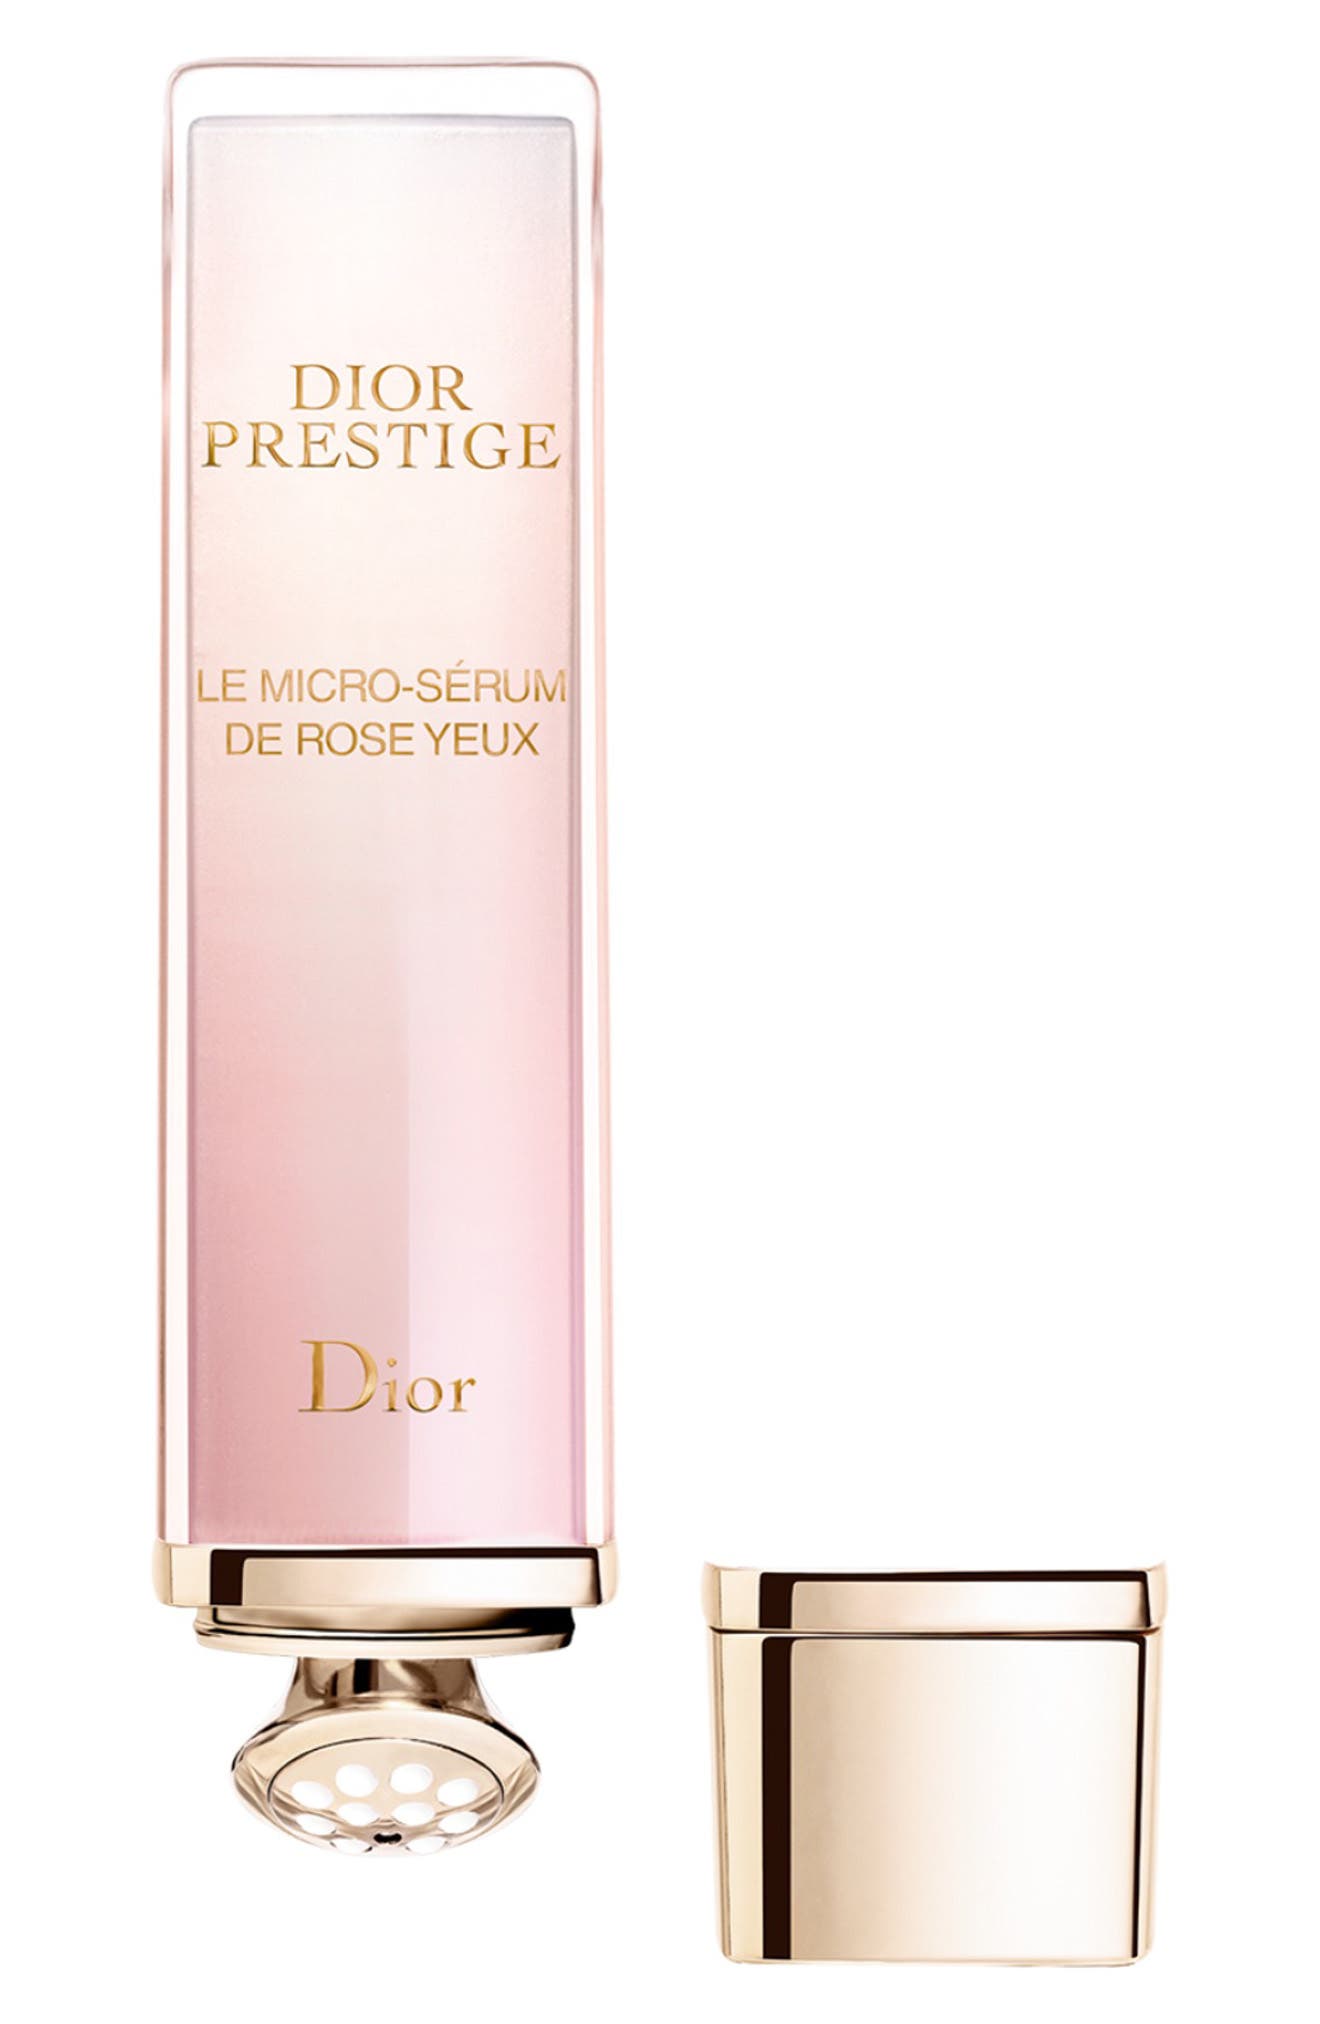 dior prestige eye cream